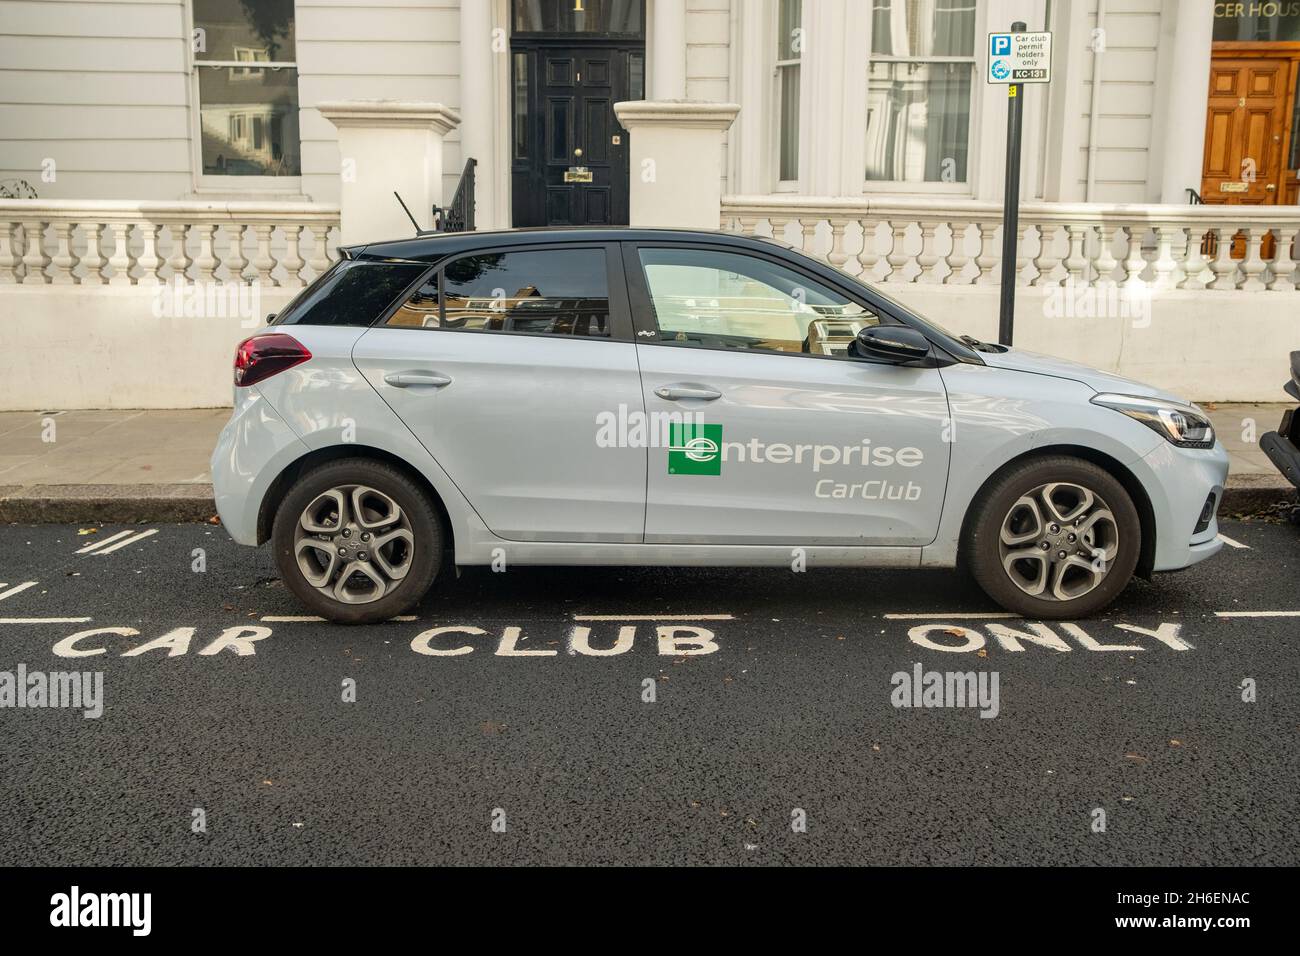 Londra - Novembre 2021: Auto Enterprise Car Club parcheggiata nel parcheggio designato in London Street Foto Stock